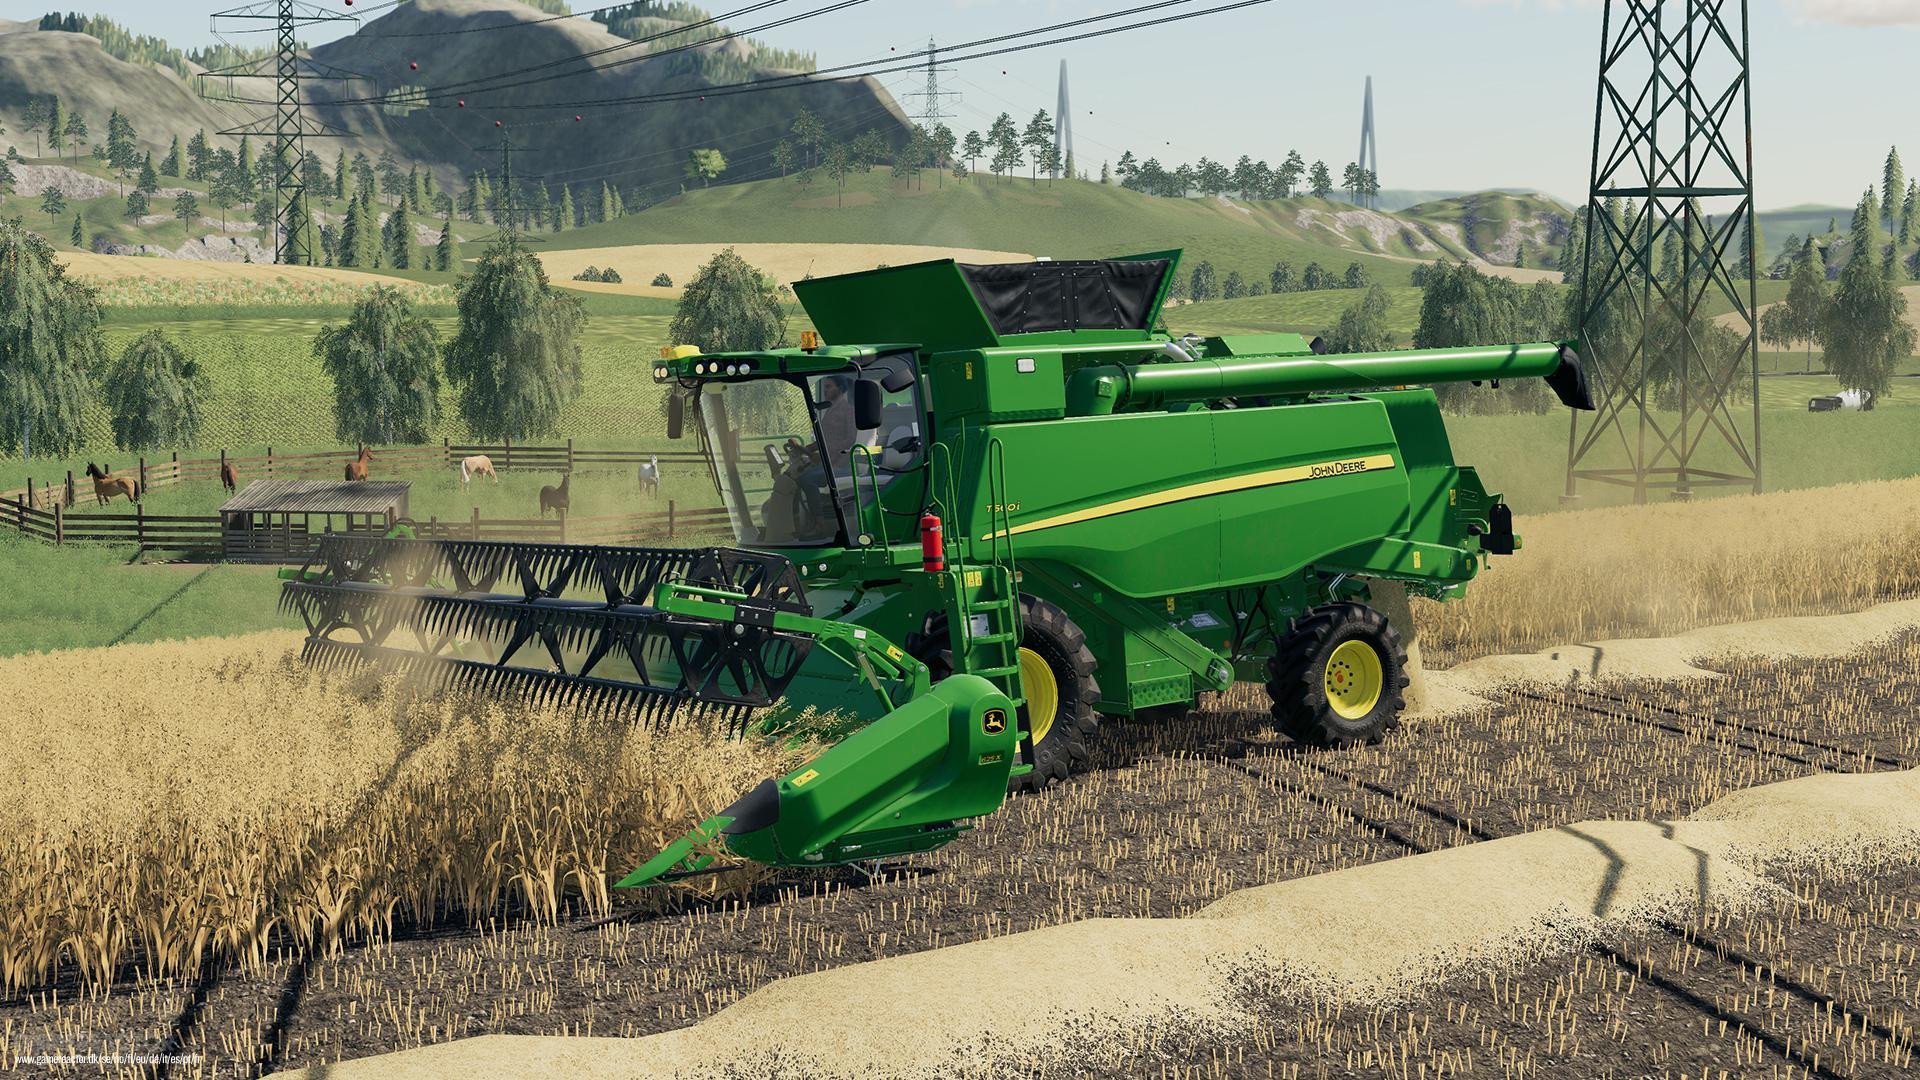 How to Install Farming Simulator 22 Mods?